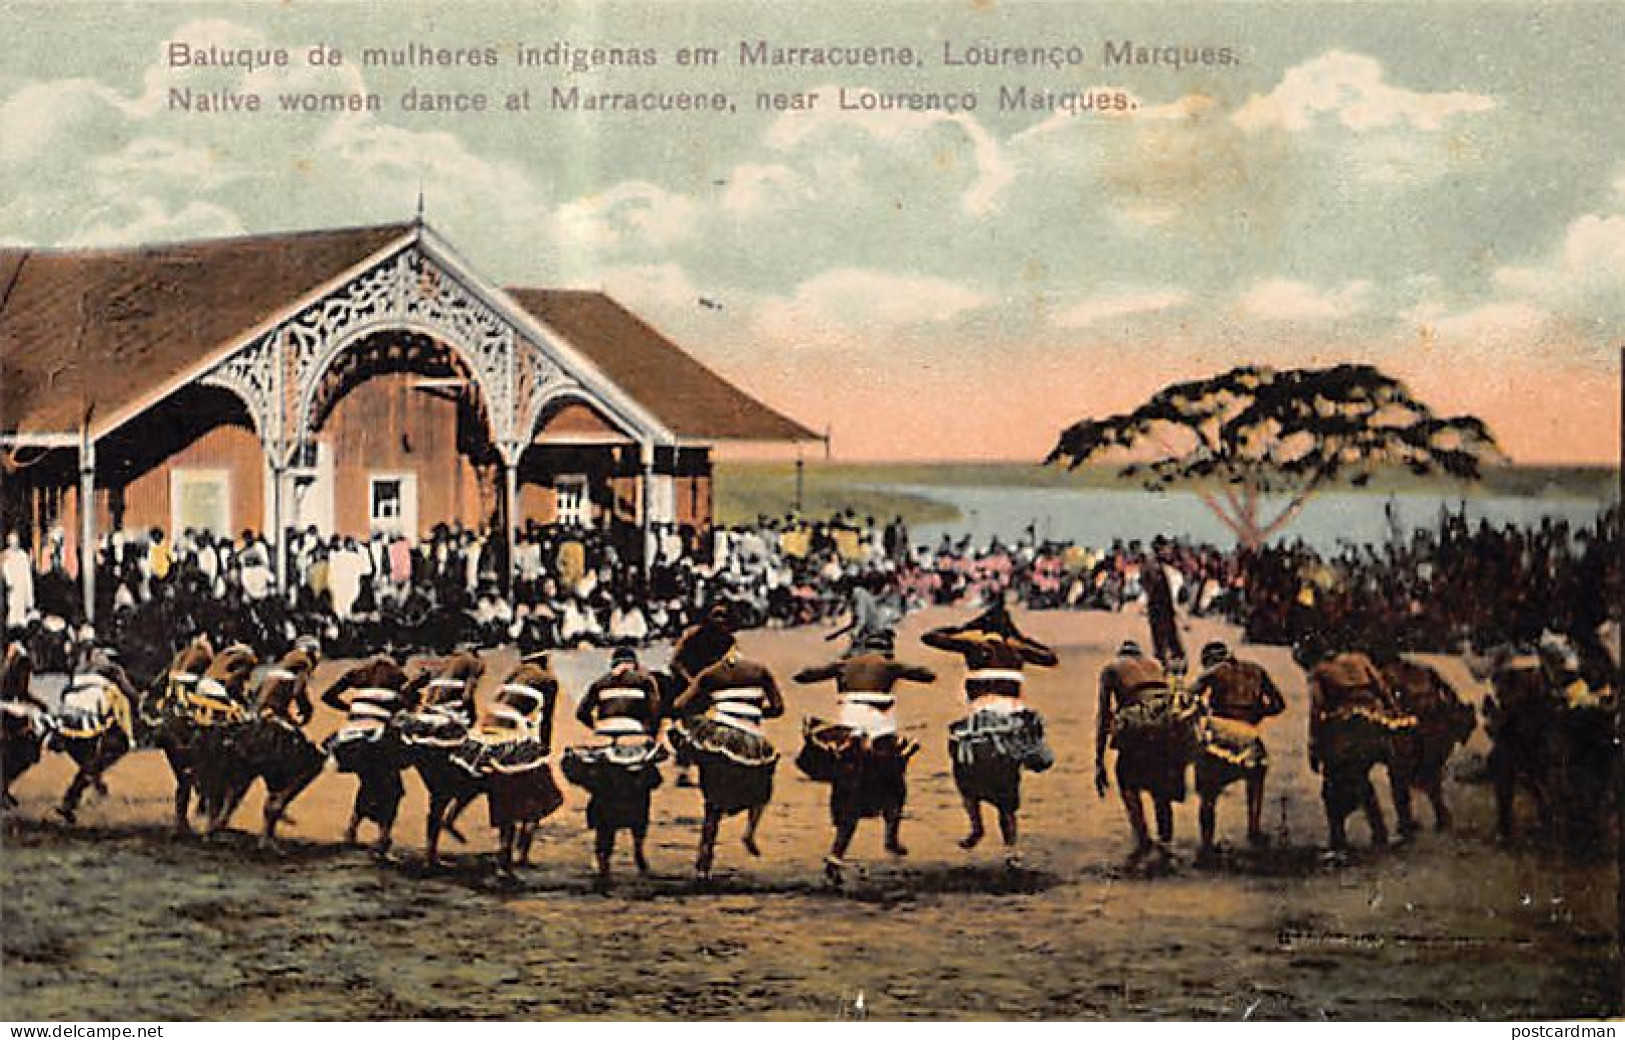 MOÇAMBIQUE Mozambique - Batuque De Mulheres Indigenas Em Marracuene - Native Women Dance At Marracuene - Ed. / Publ. Spa - Mosambik